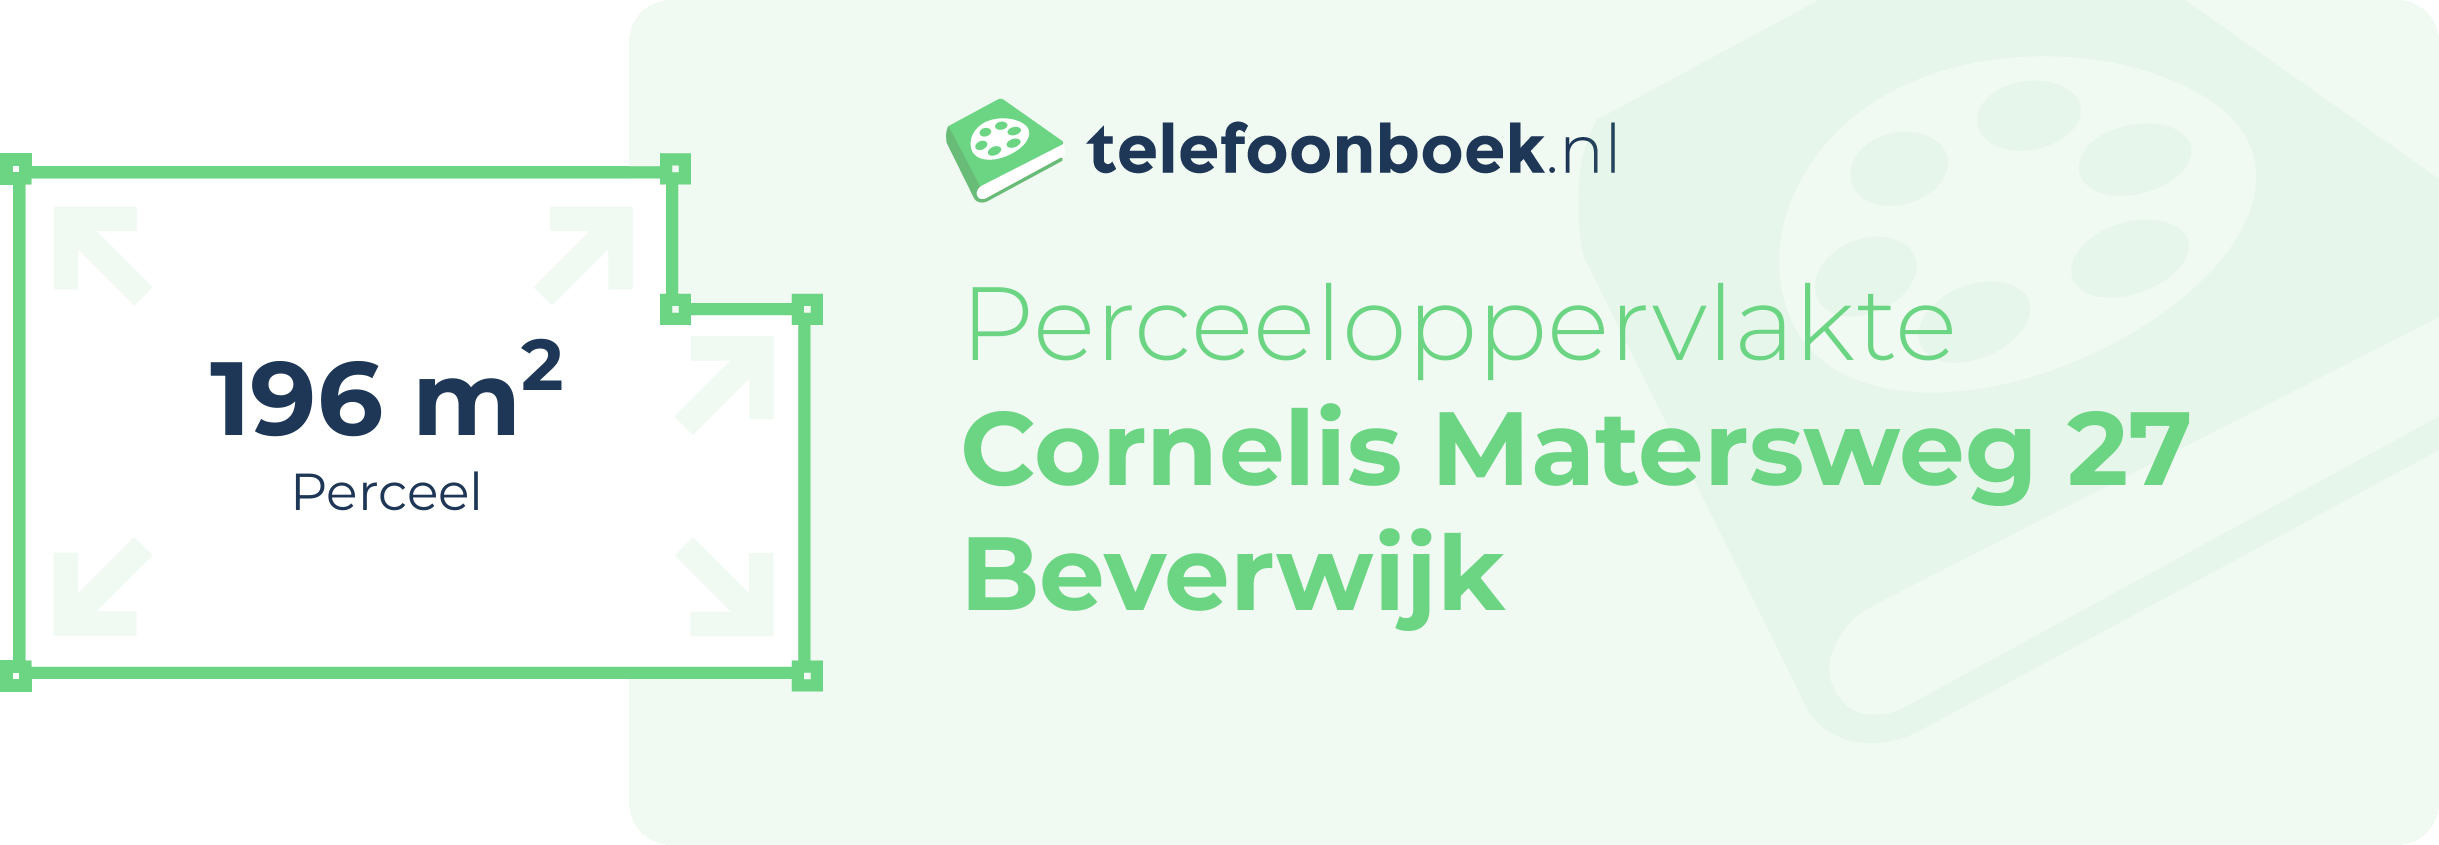 Perceeloppervlakte Cornelis Matersweg 27 Beverwijk